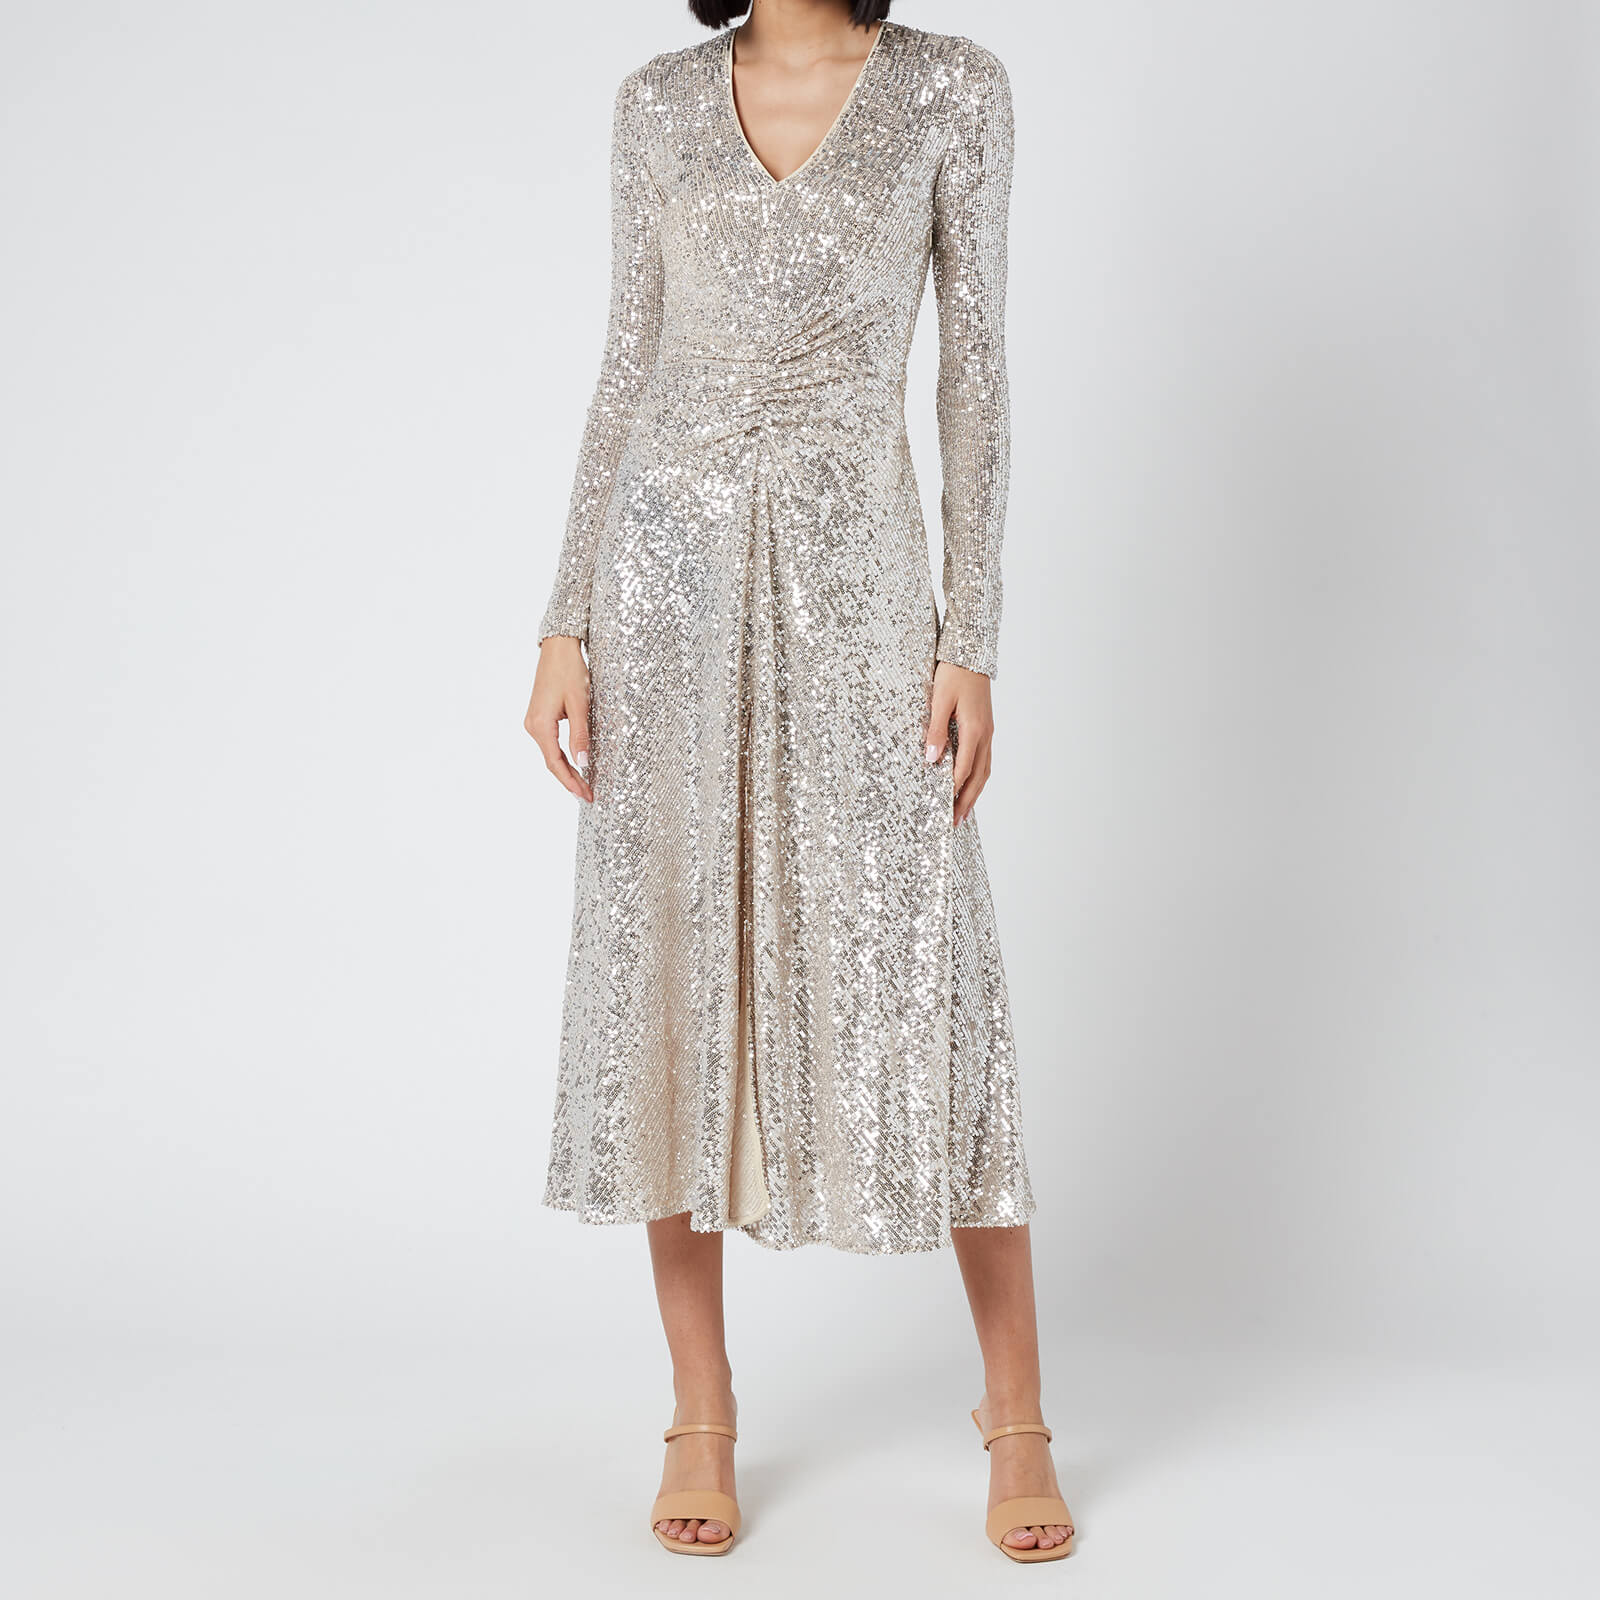 ROTATE Birger Christensen Women's Sierra Dress - Silver - DK 36/UK 10